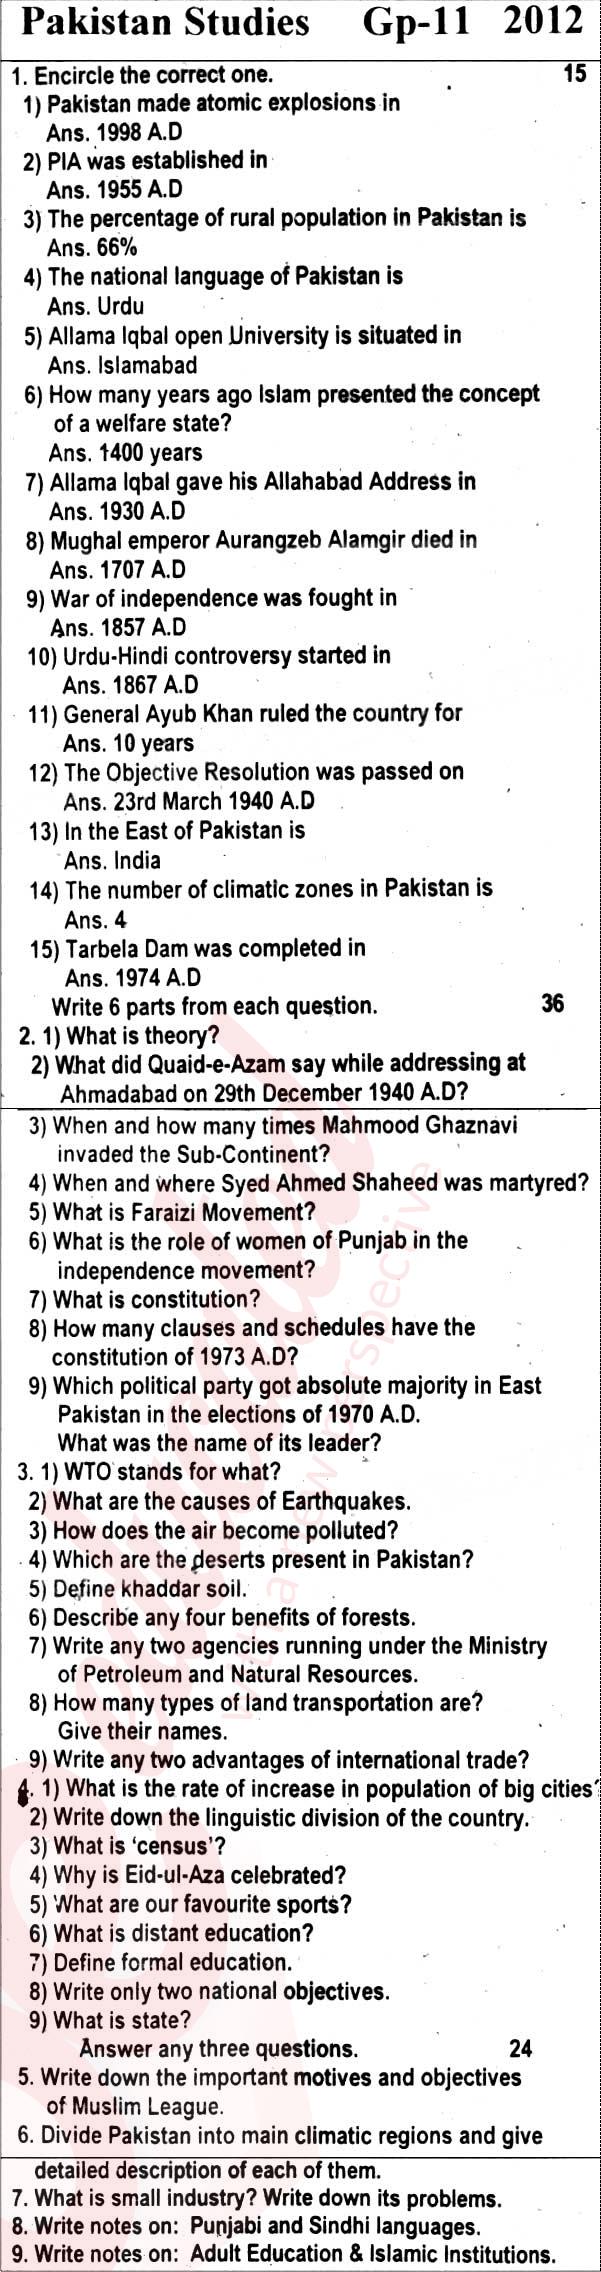 Pak Studies 10th English Medium Past Paper Group 2 BISE Rawalpindi 2012